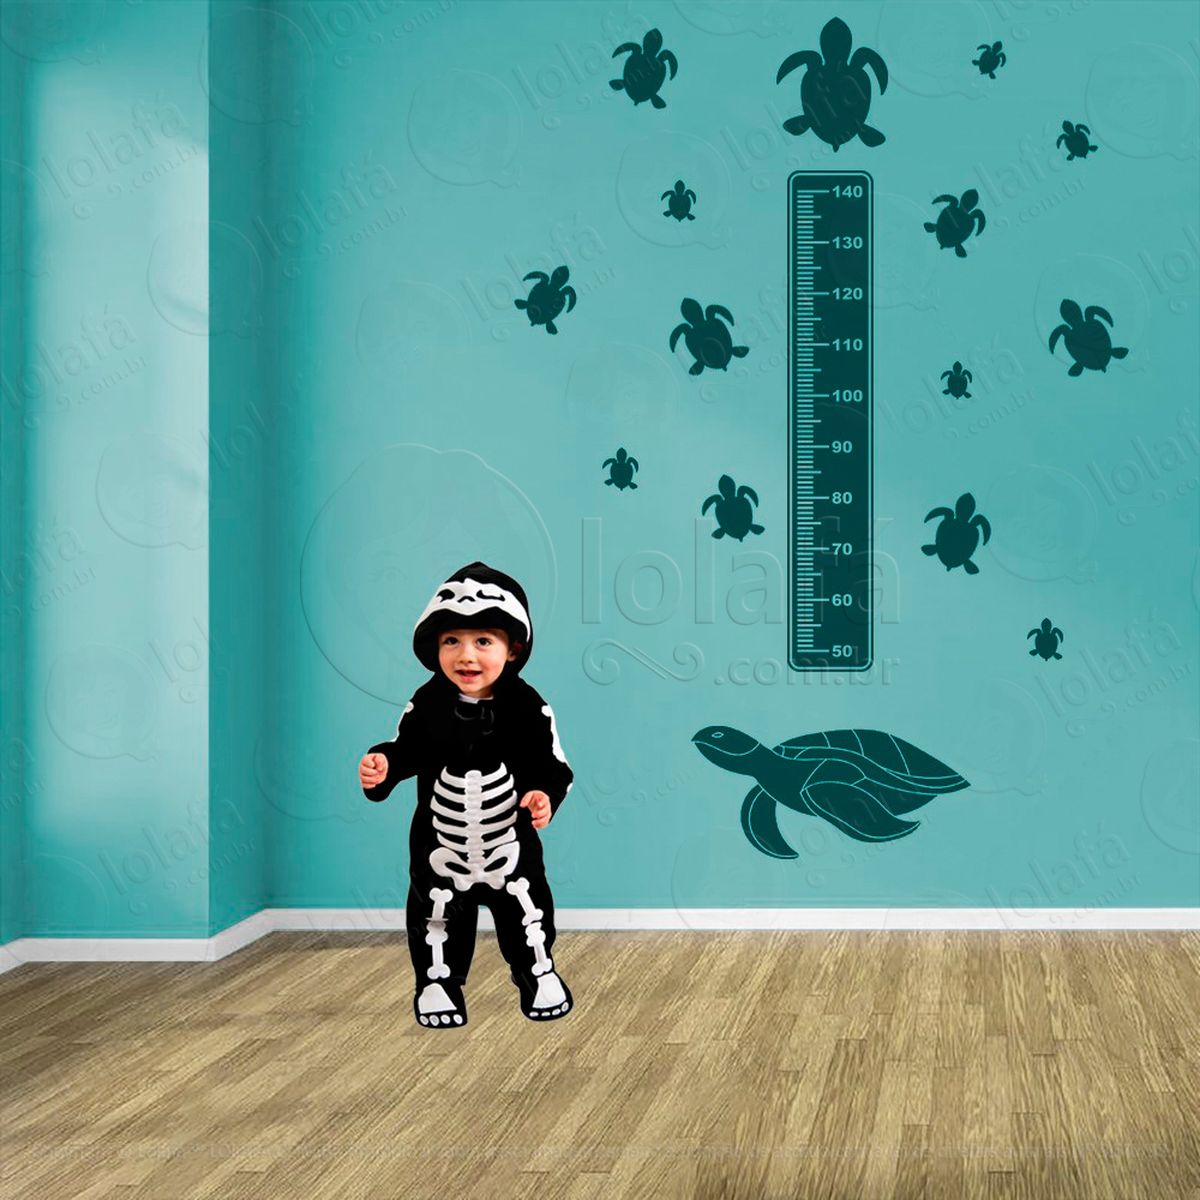 tartaruga e tartarugas adesivo régua de crescimento infantil, medidor de altura para quarto, porta e parede - mod:194